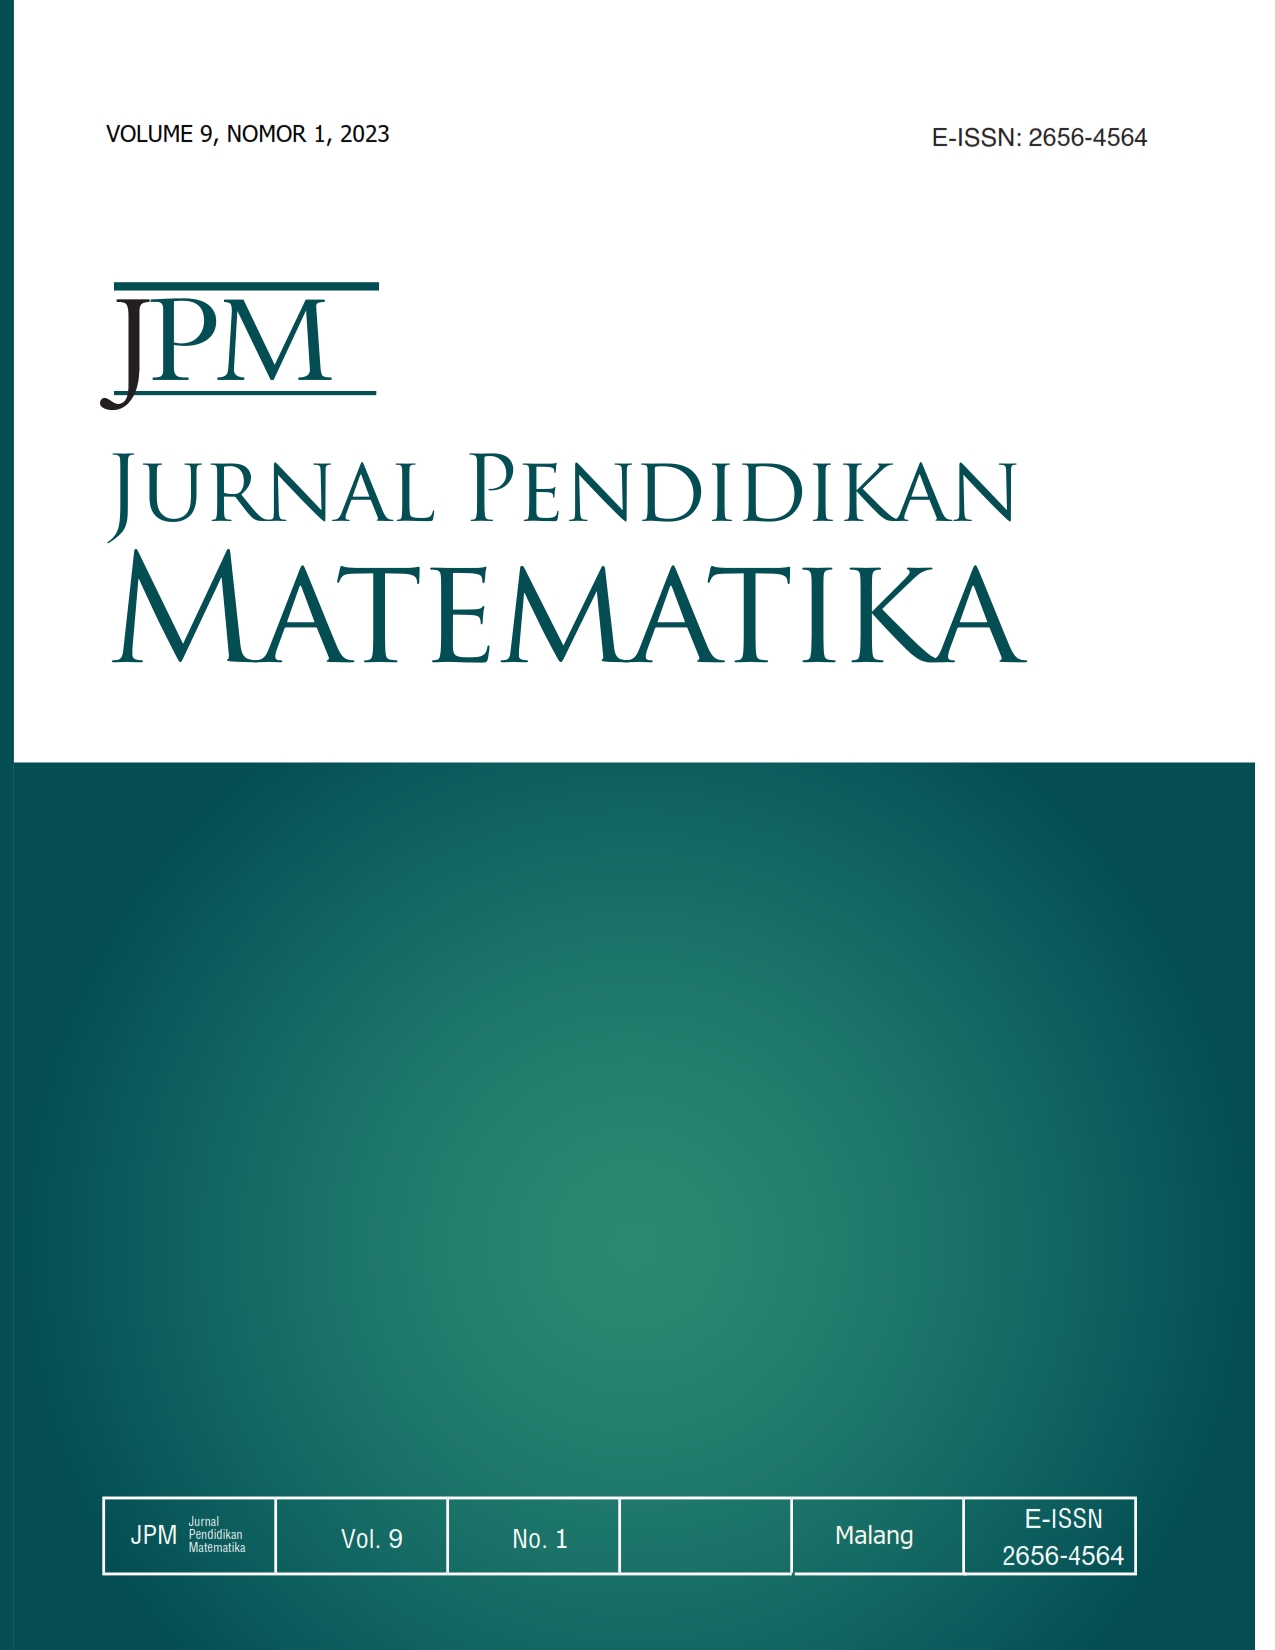 COVER JPM VOL 9 NO 1 2023